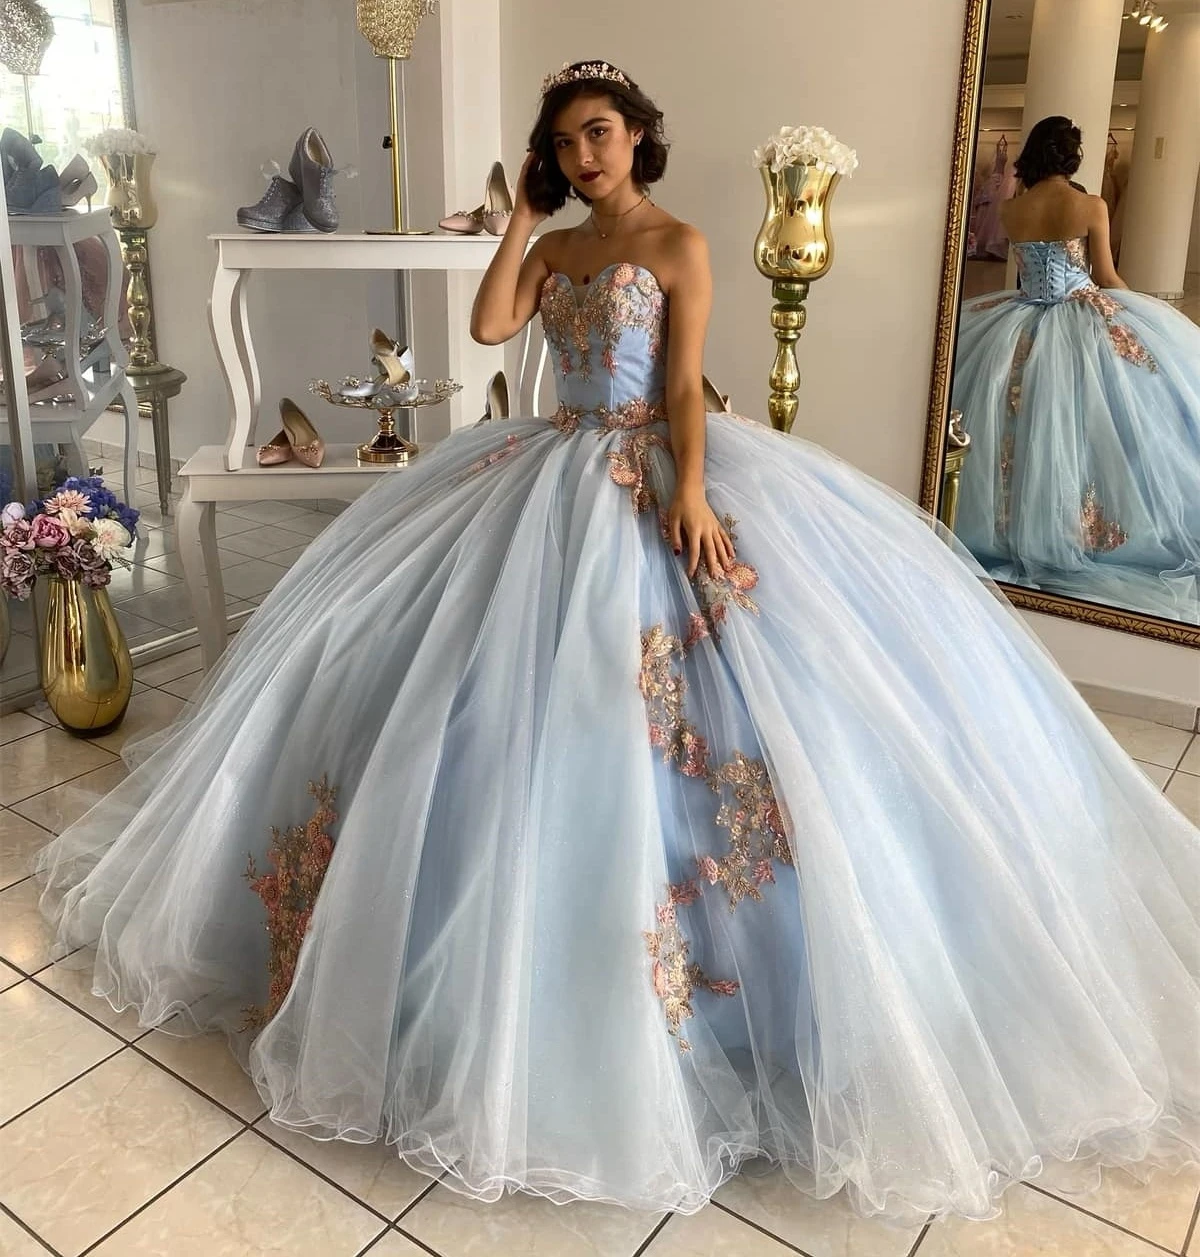 

Цельнокроеное платье принцессы, бальное платье, милое Тюлевое кружевное платье с аппликацией, 16 платьев, 15 лет, на заказ